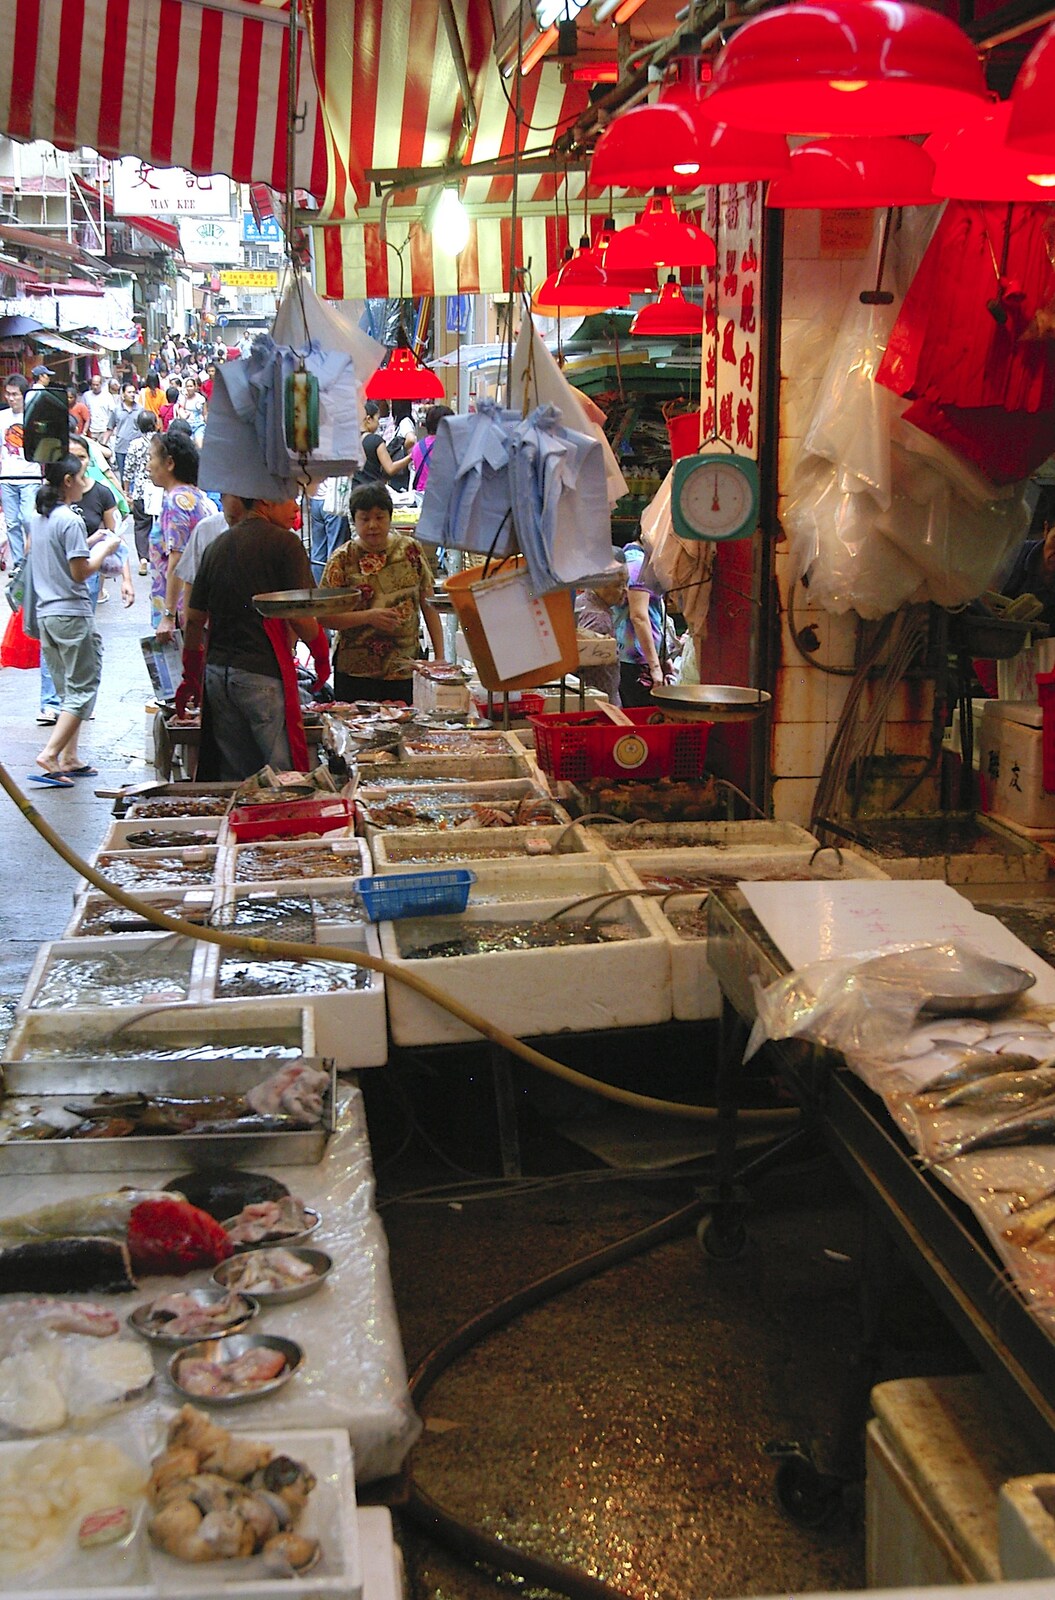 Crates of chilled sea food from Lan Kwai Fong Market, Hong Kong, China - 4th October 2006